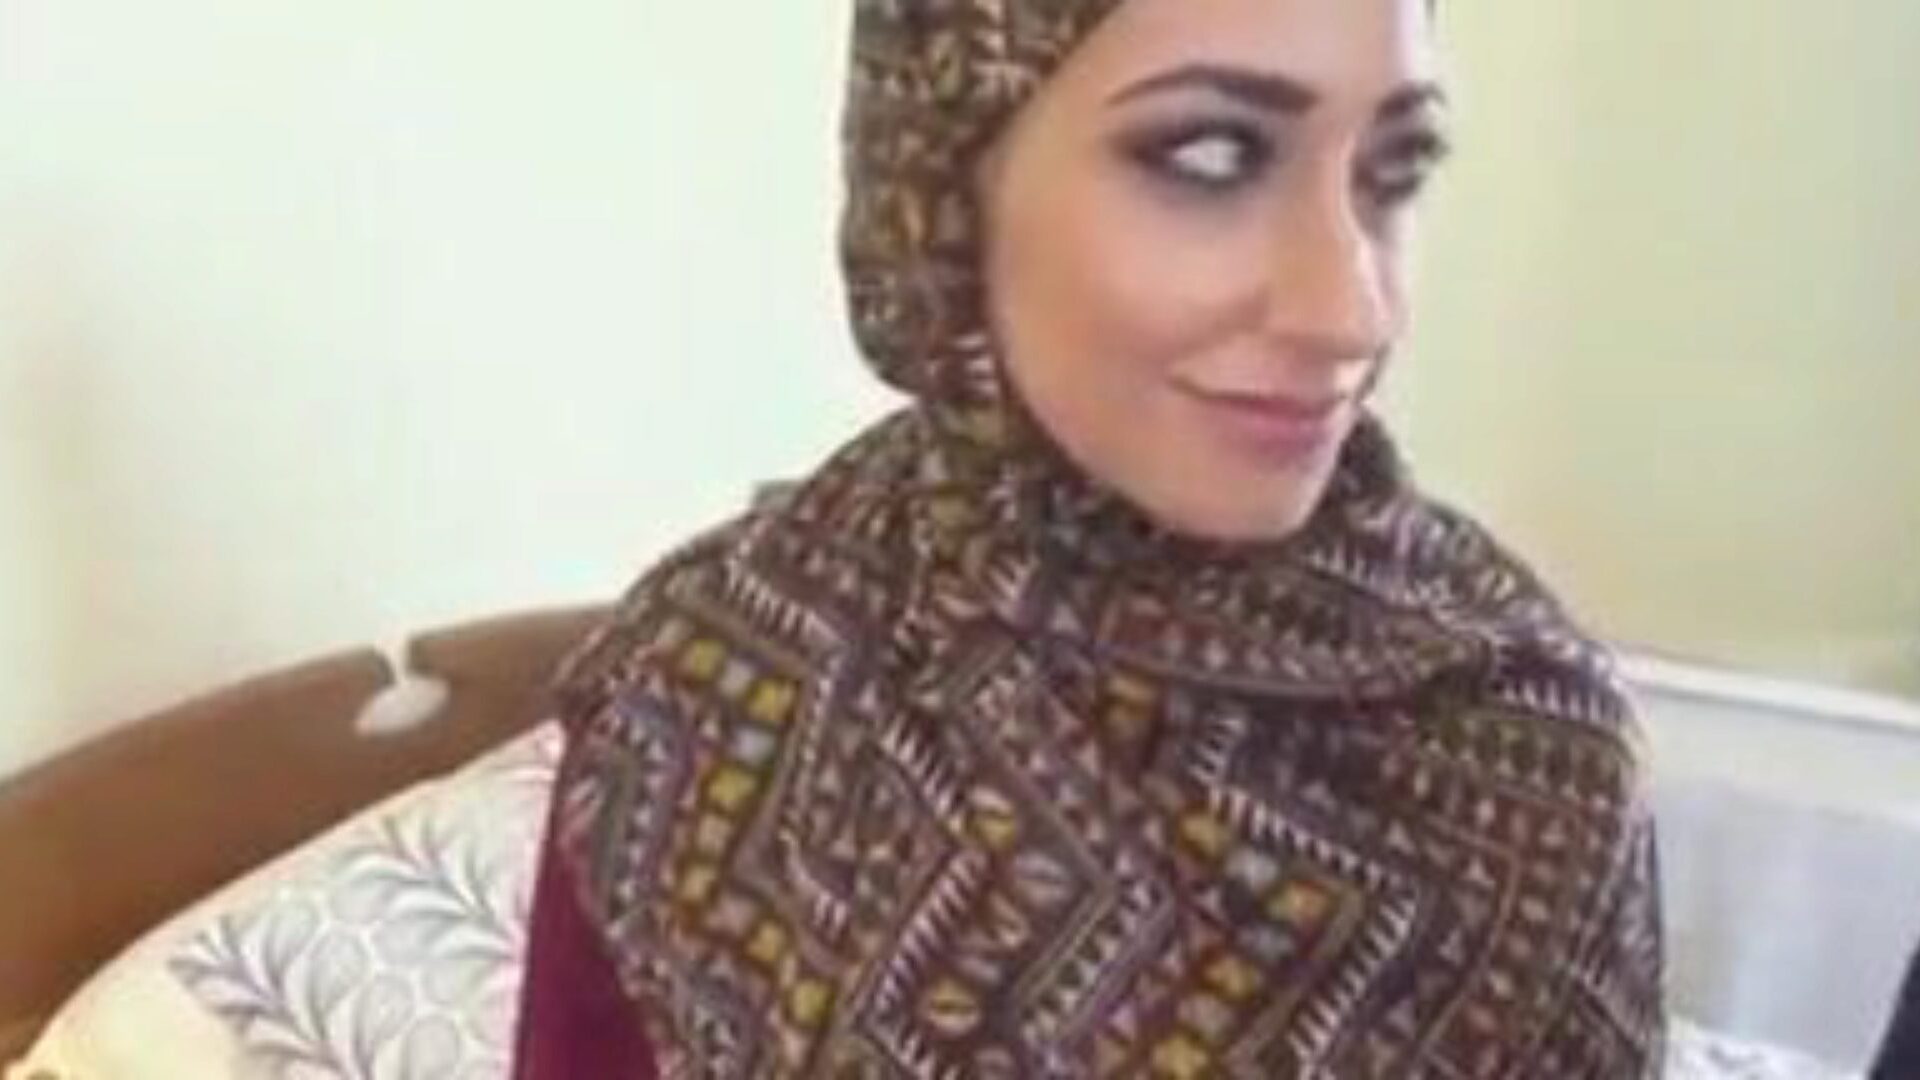 dracului de fată musulmană hijab, video porno cu canalul musulman gratuit ceas ceasul filmului dracului de fată musulmană hijab pe xhamster, cea mai mare pagină web a canalului dracu-fest cu tone de tuburi arabe musulmane gratuite și videoclipuri porno hijab pe YouTube